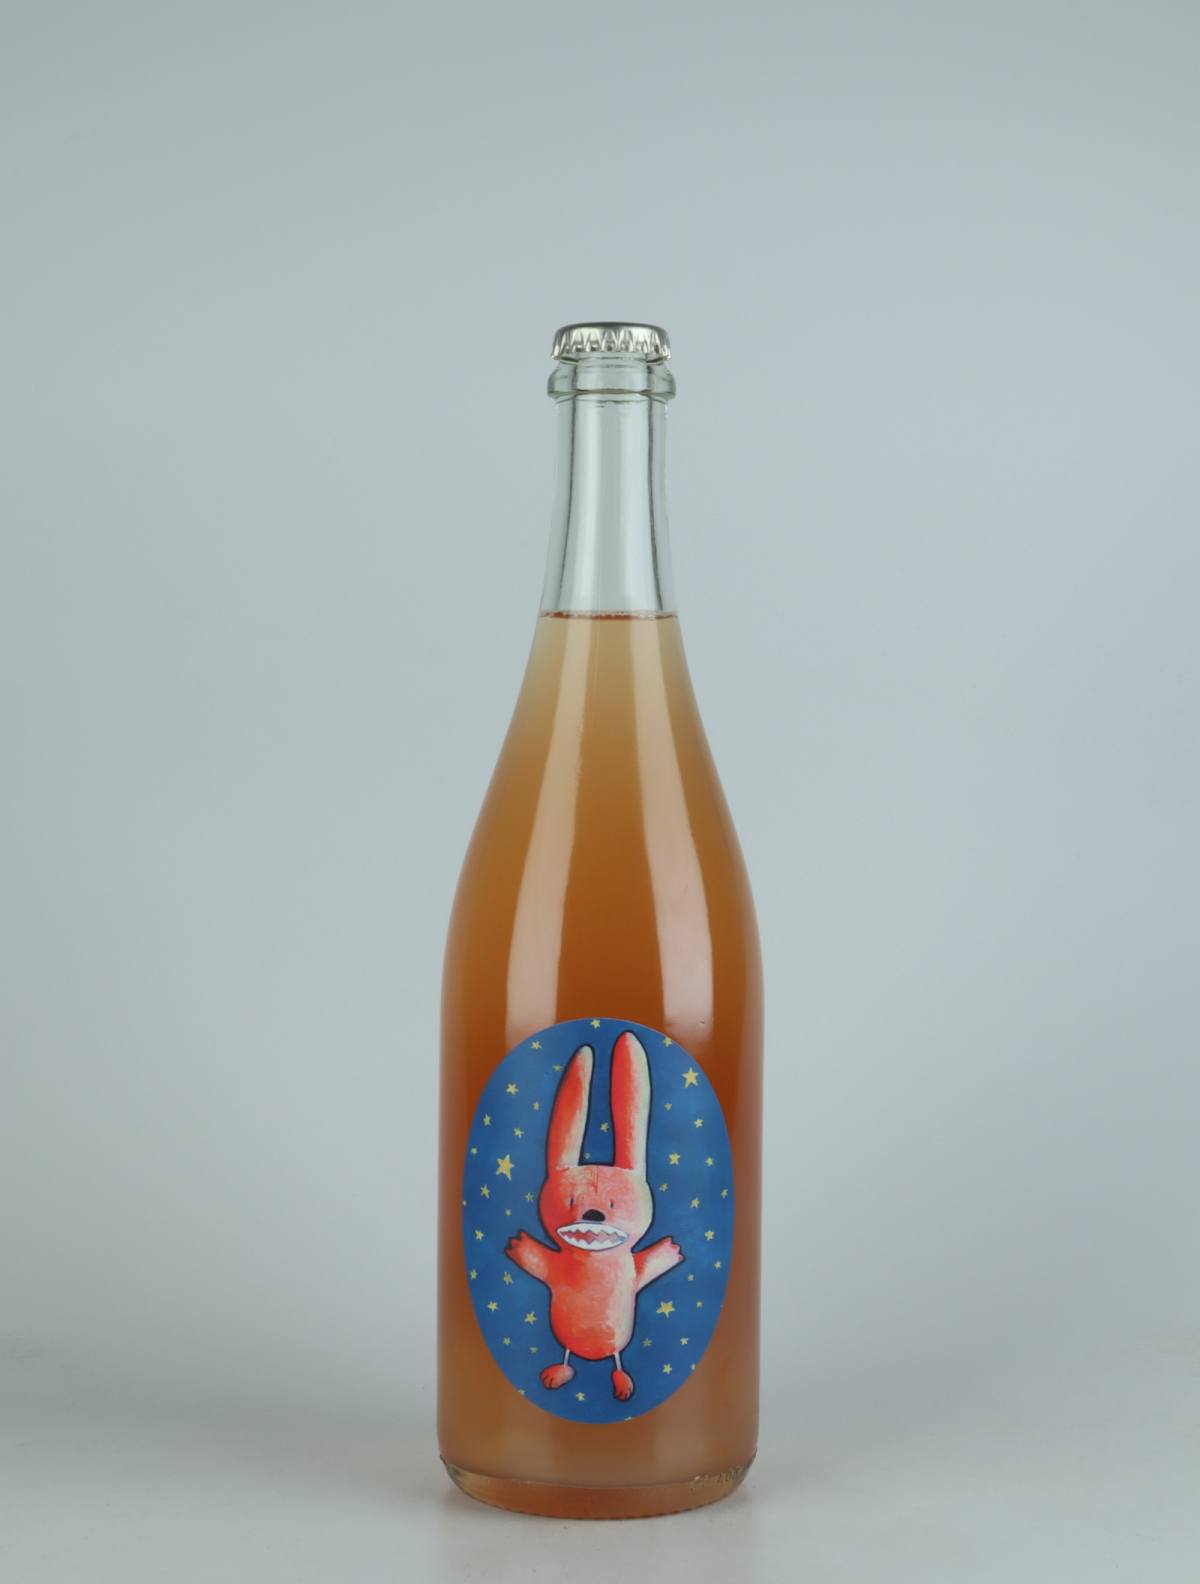 En flaske 2021 Astro Bunny Mousserende fra , Adelaide Hills i Australien